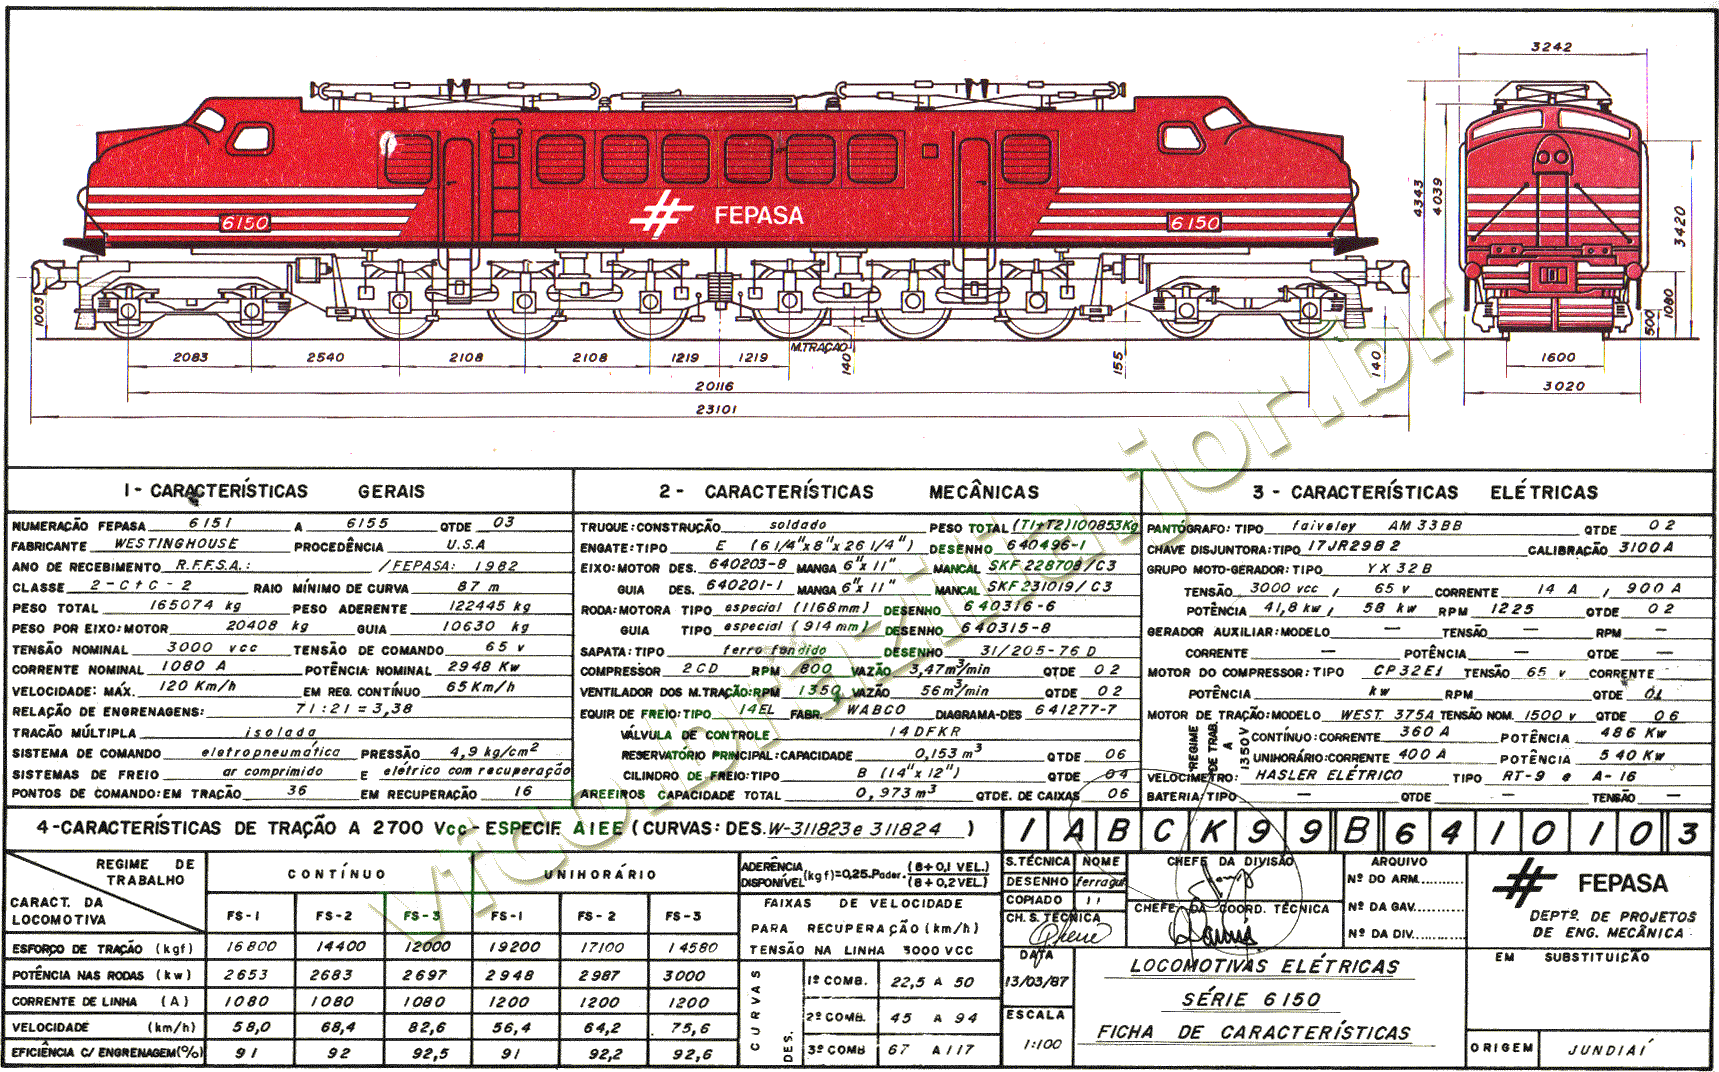 Desenho, medidas e características das locomotivas "V8" Westinghouse 2-C+C-2 nº 6151 a 6155 da Fepasa - Ferrovias Paulistas